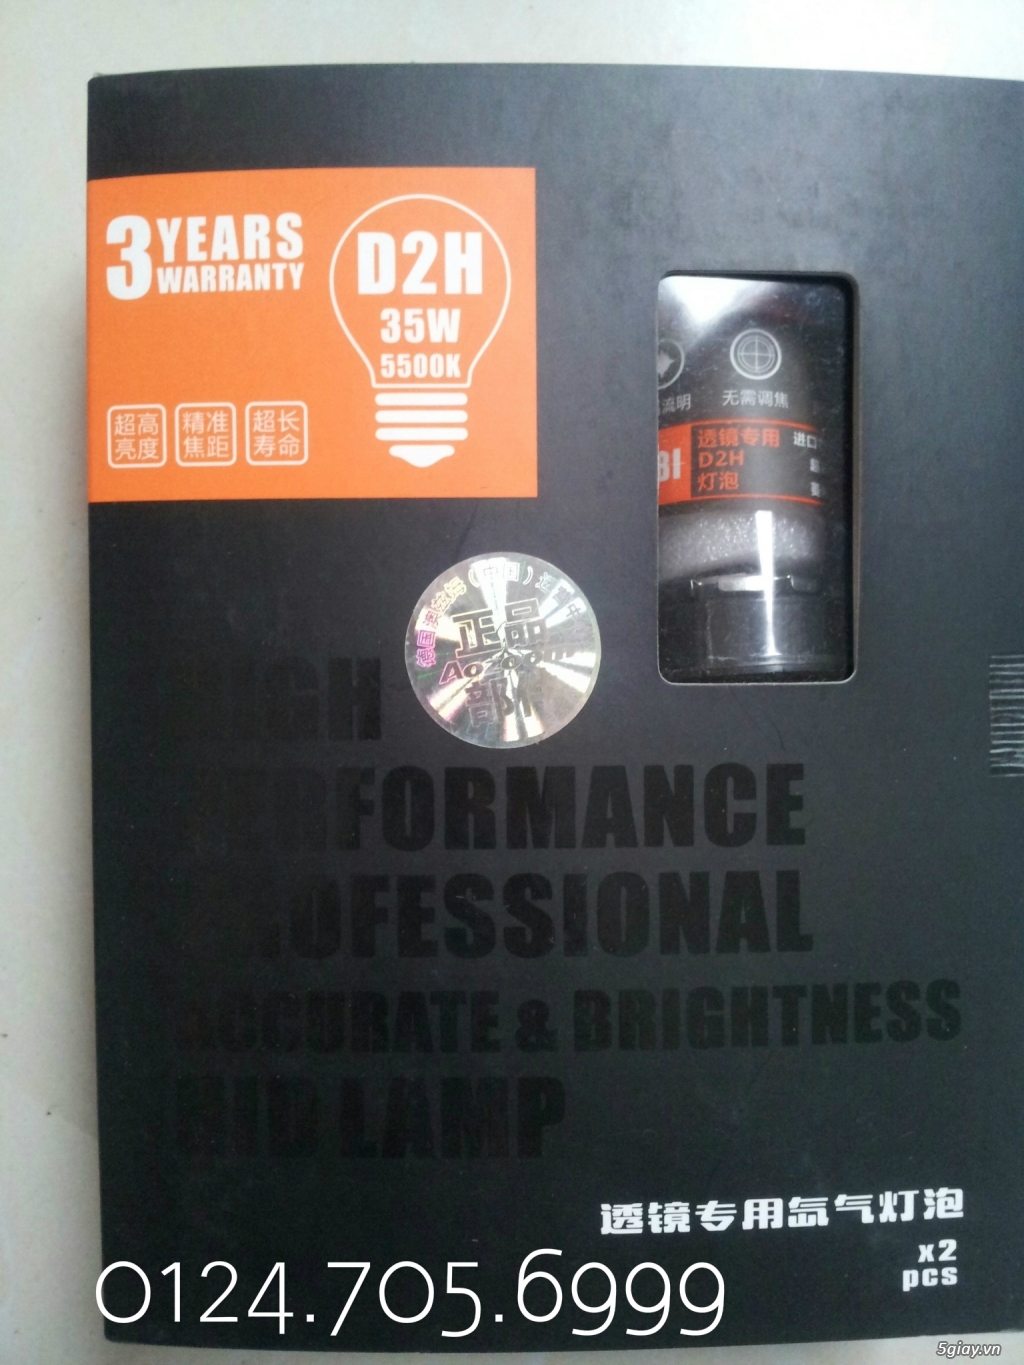 Phân phối số lượng đèn xenon chính hãng Aozoom bảo hành 3 năm - 11